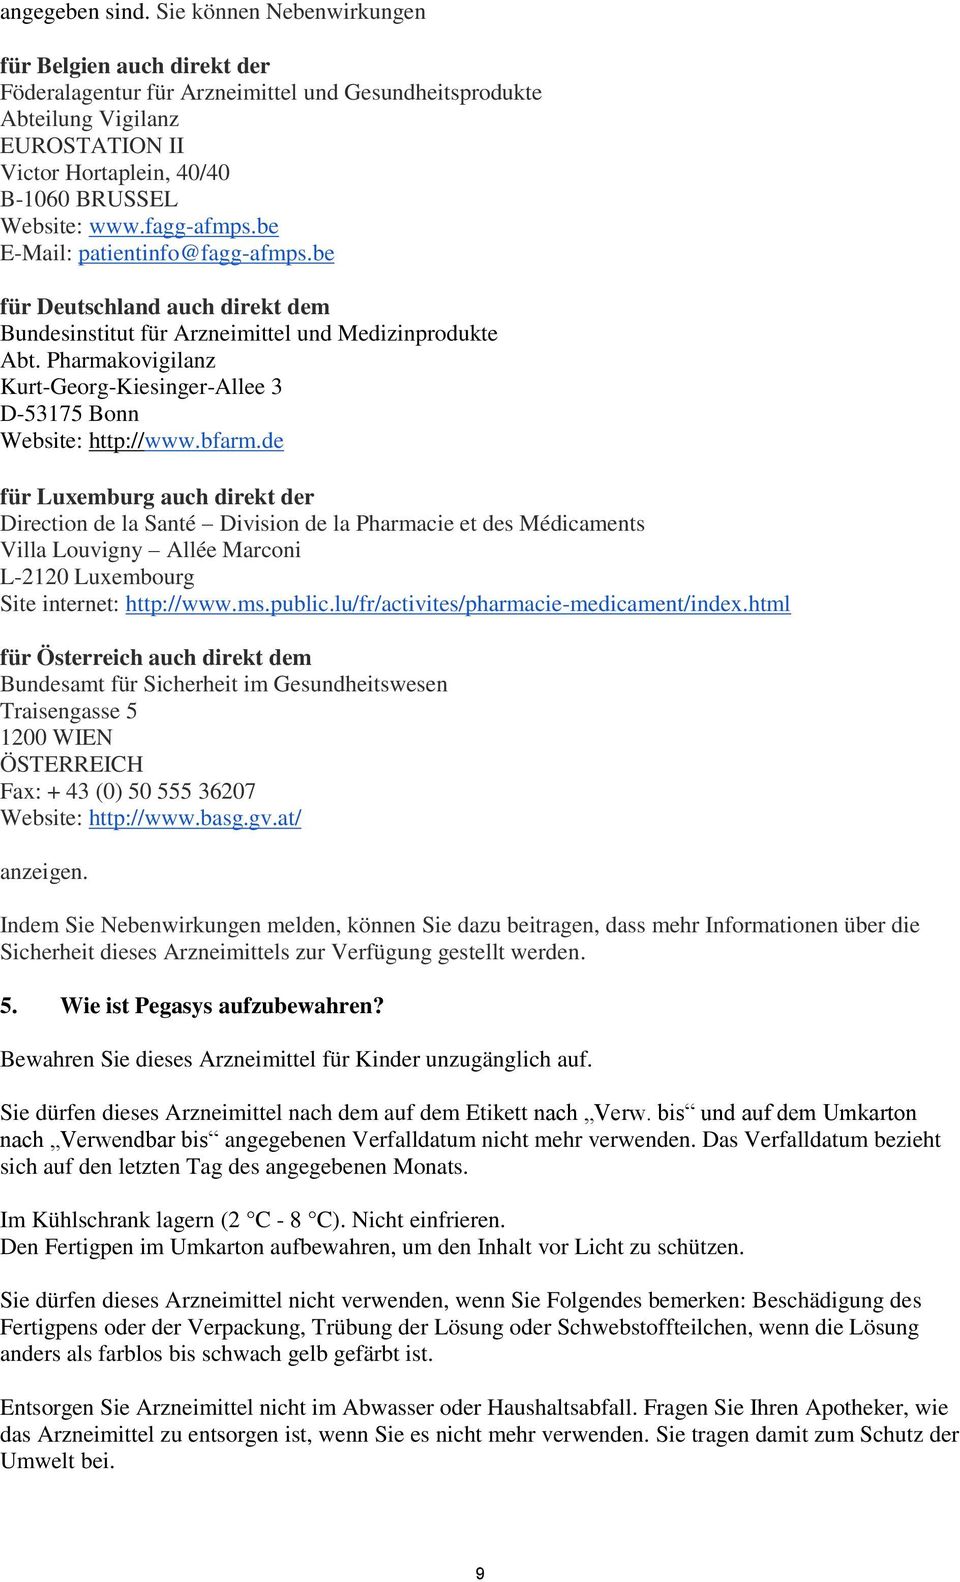 fagg-afmps.be E-Mail: patientinfo@fagg-afmps.be für Deutschland auch direkt dem Bundesinstitut für Arzneimittel und Medizinprodukte Abt.